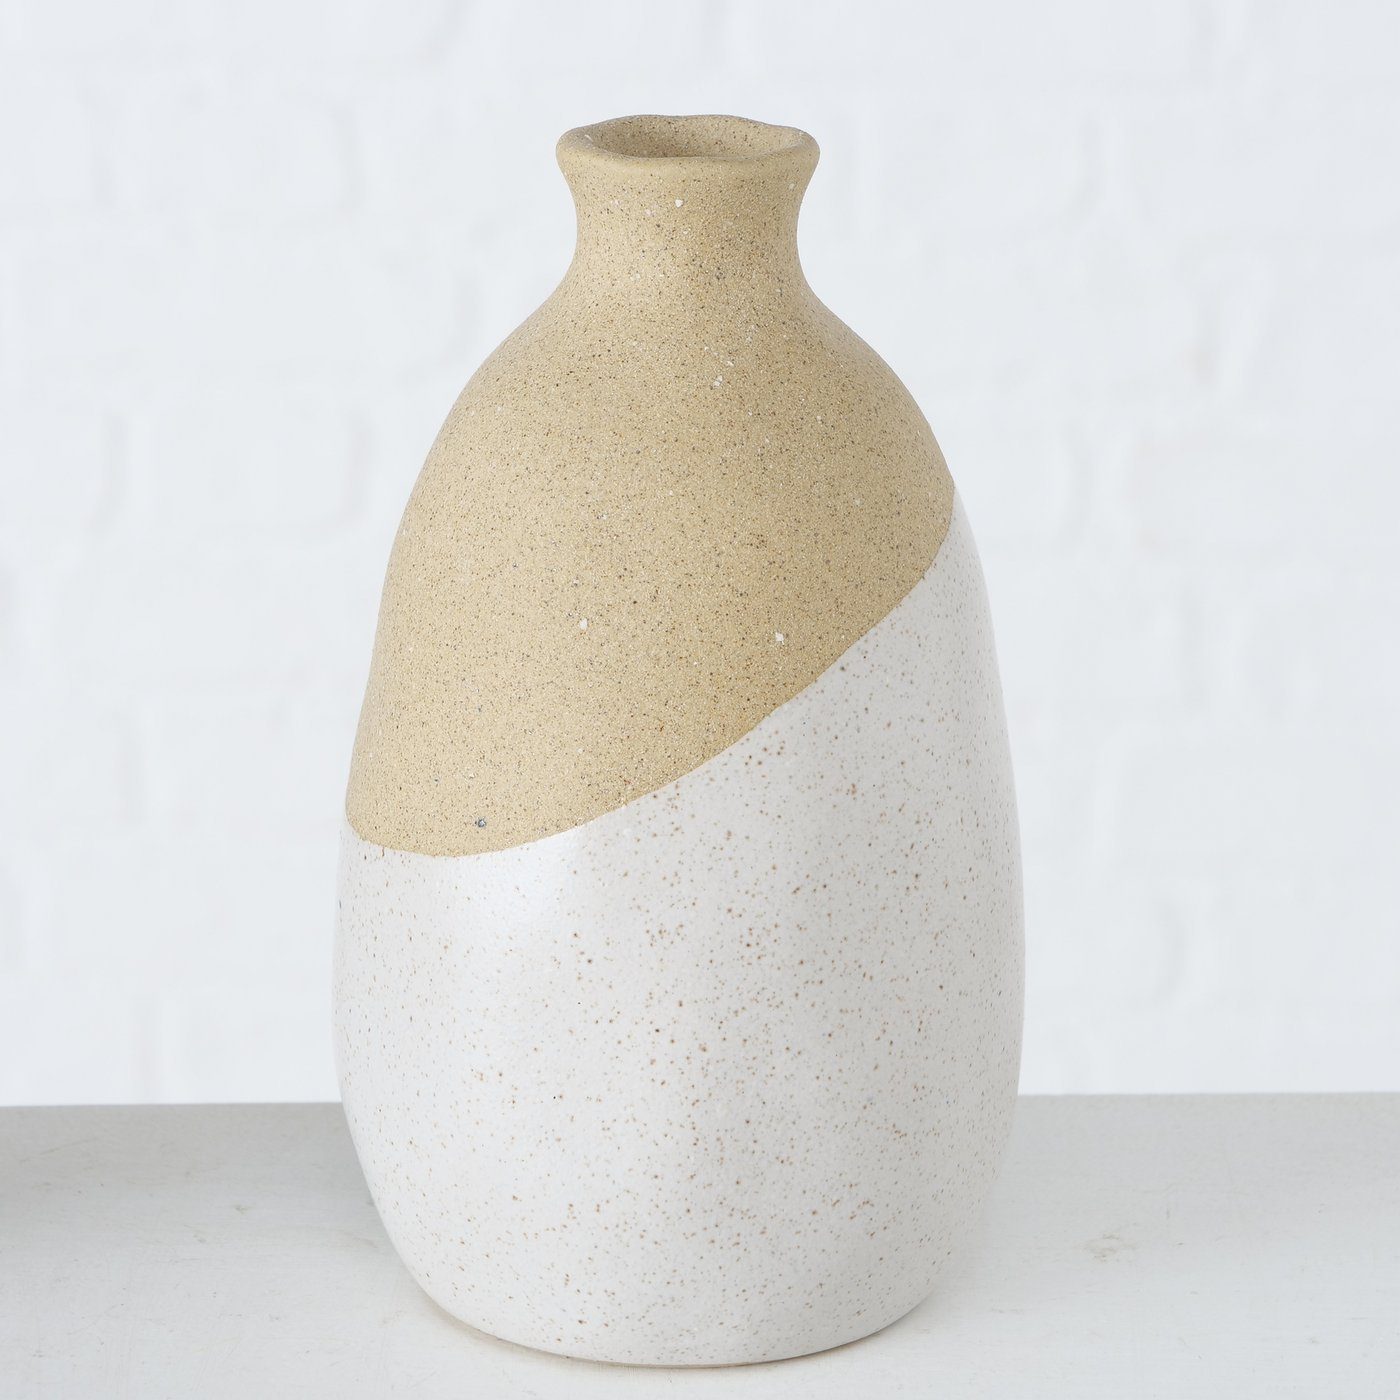 aus BOLTZE in 2er beige/schwarz/weiß, Dekovase Set Porzellan "Seily" Vase St) (2